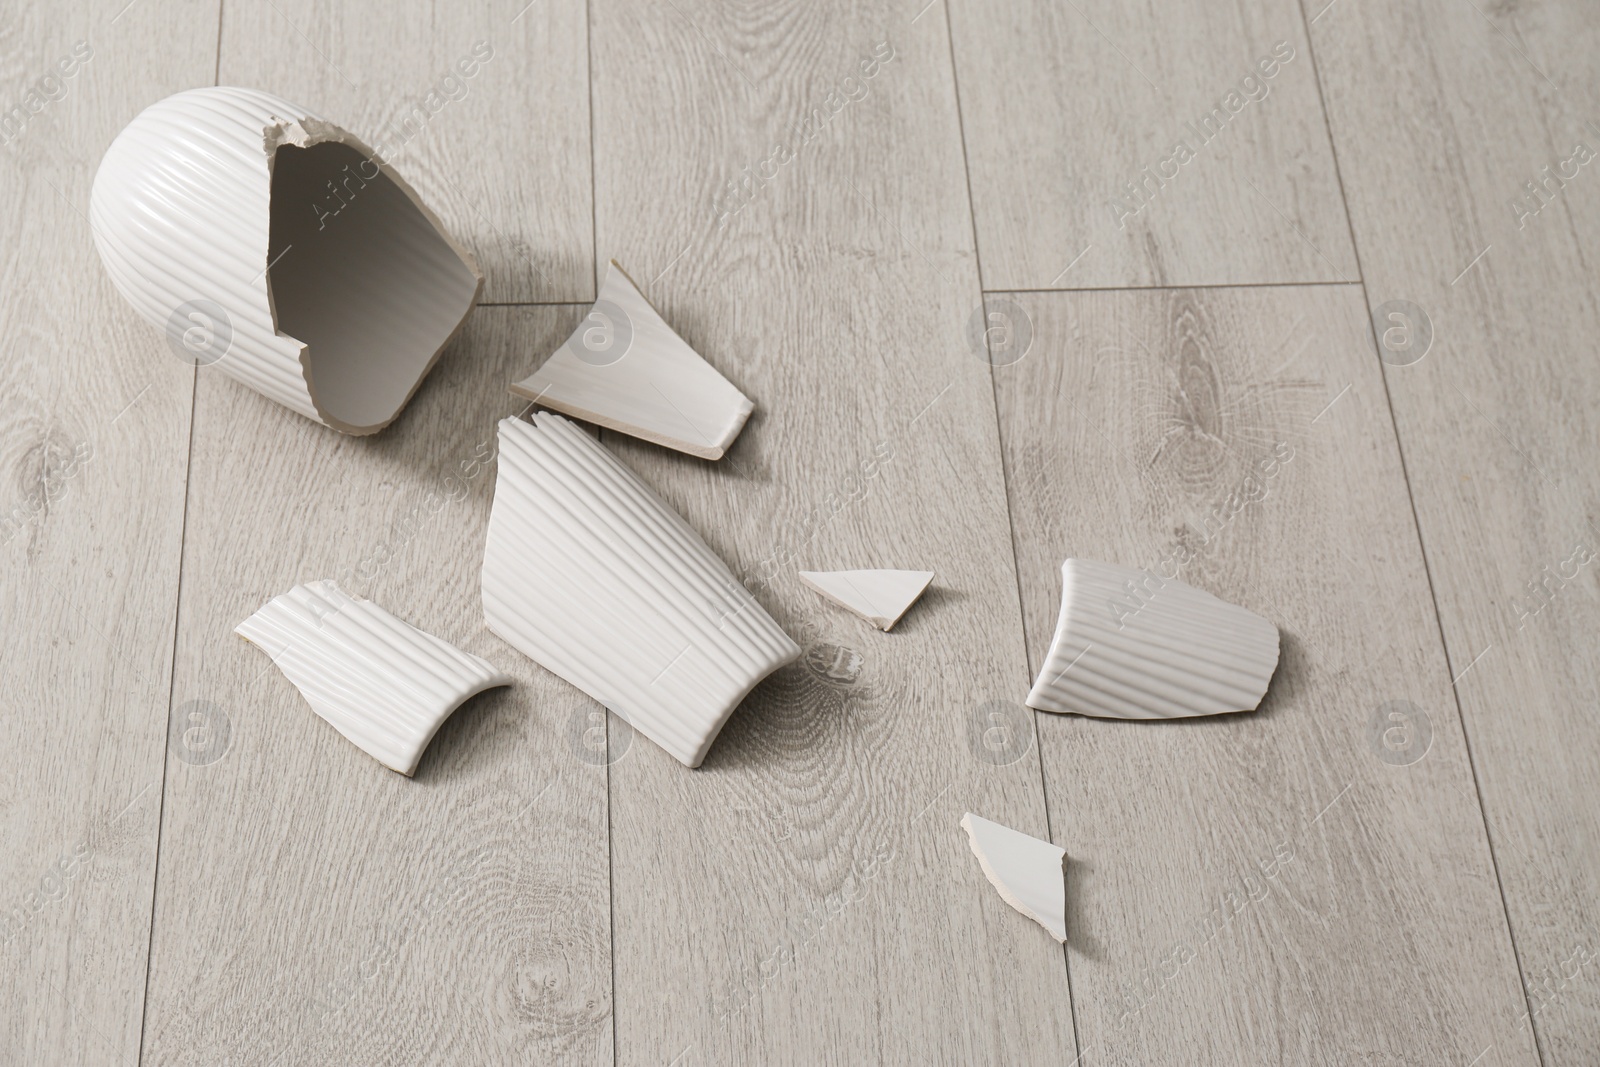 Photo of Broken white ceramic vase on wooden floor